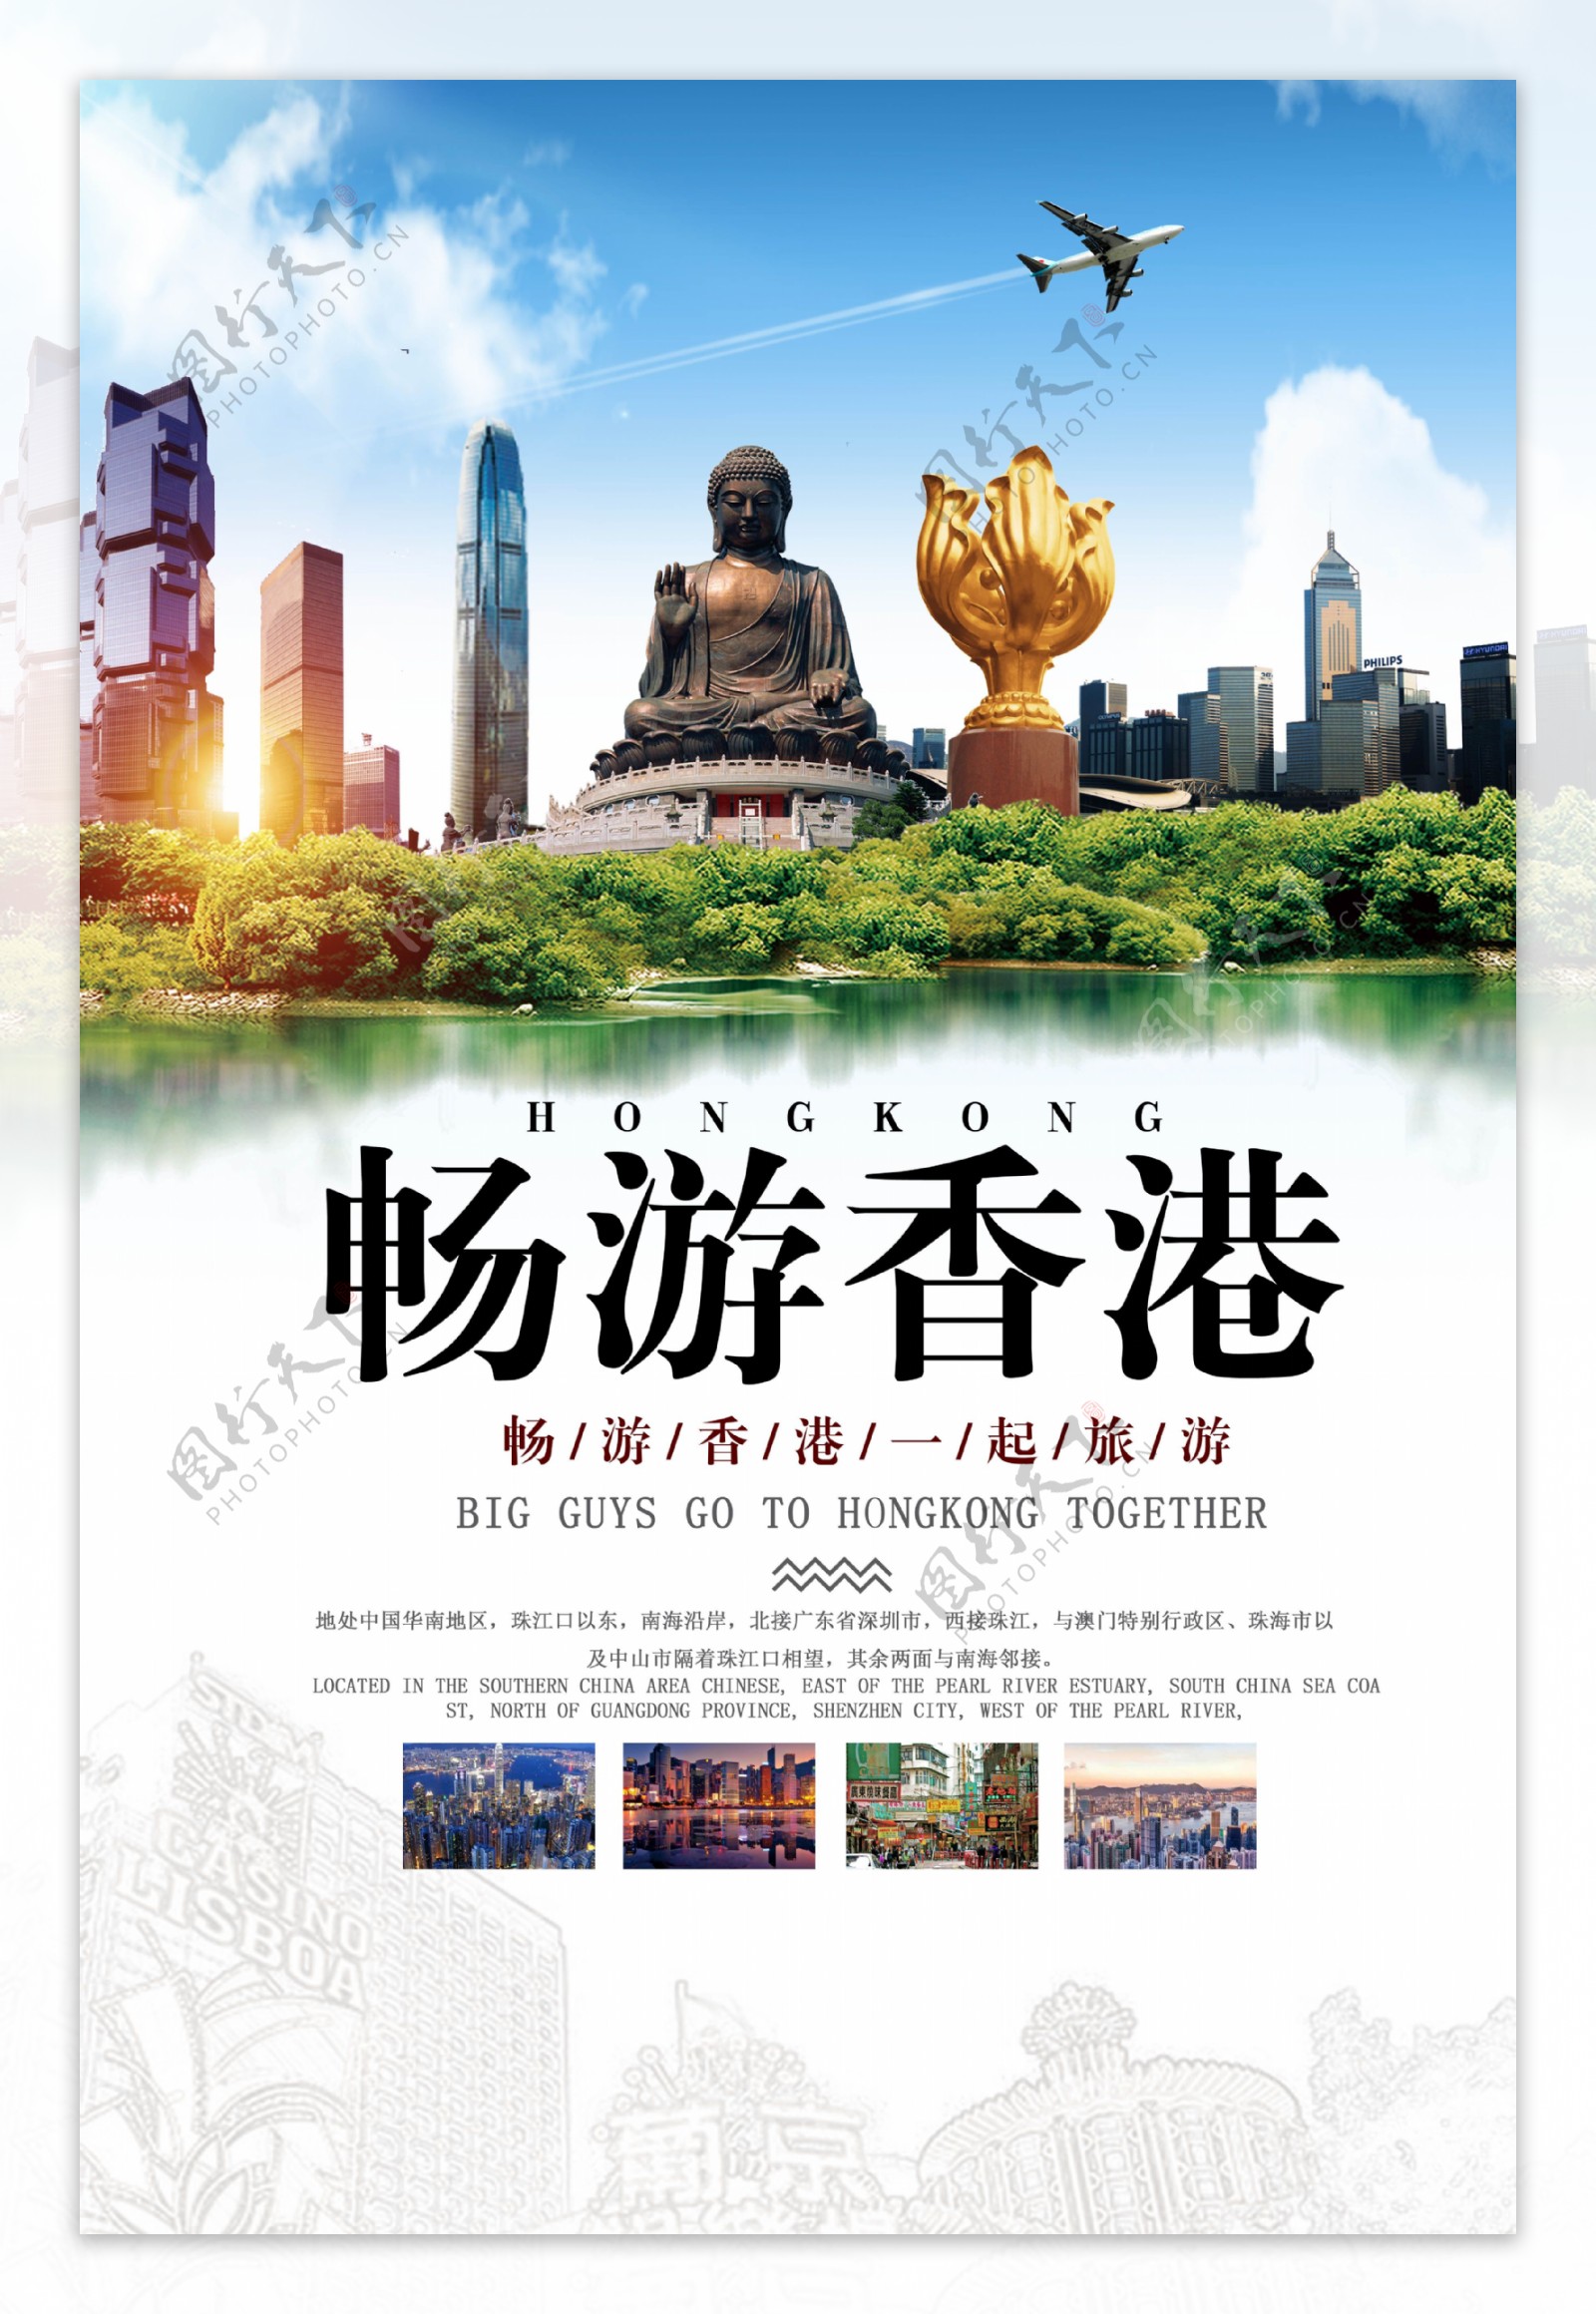 畅游香港旅行海报